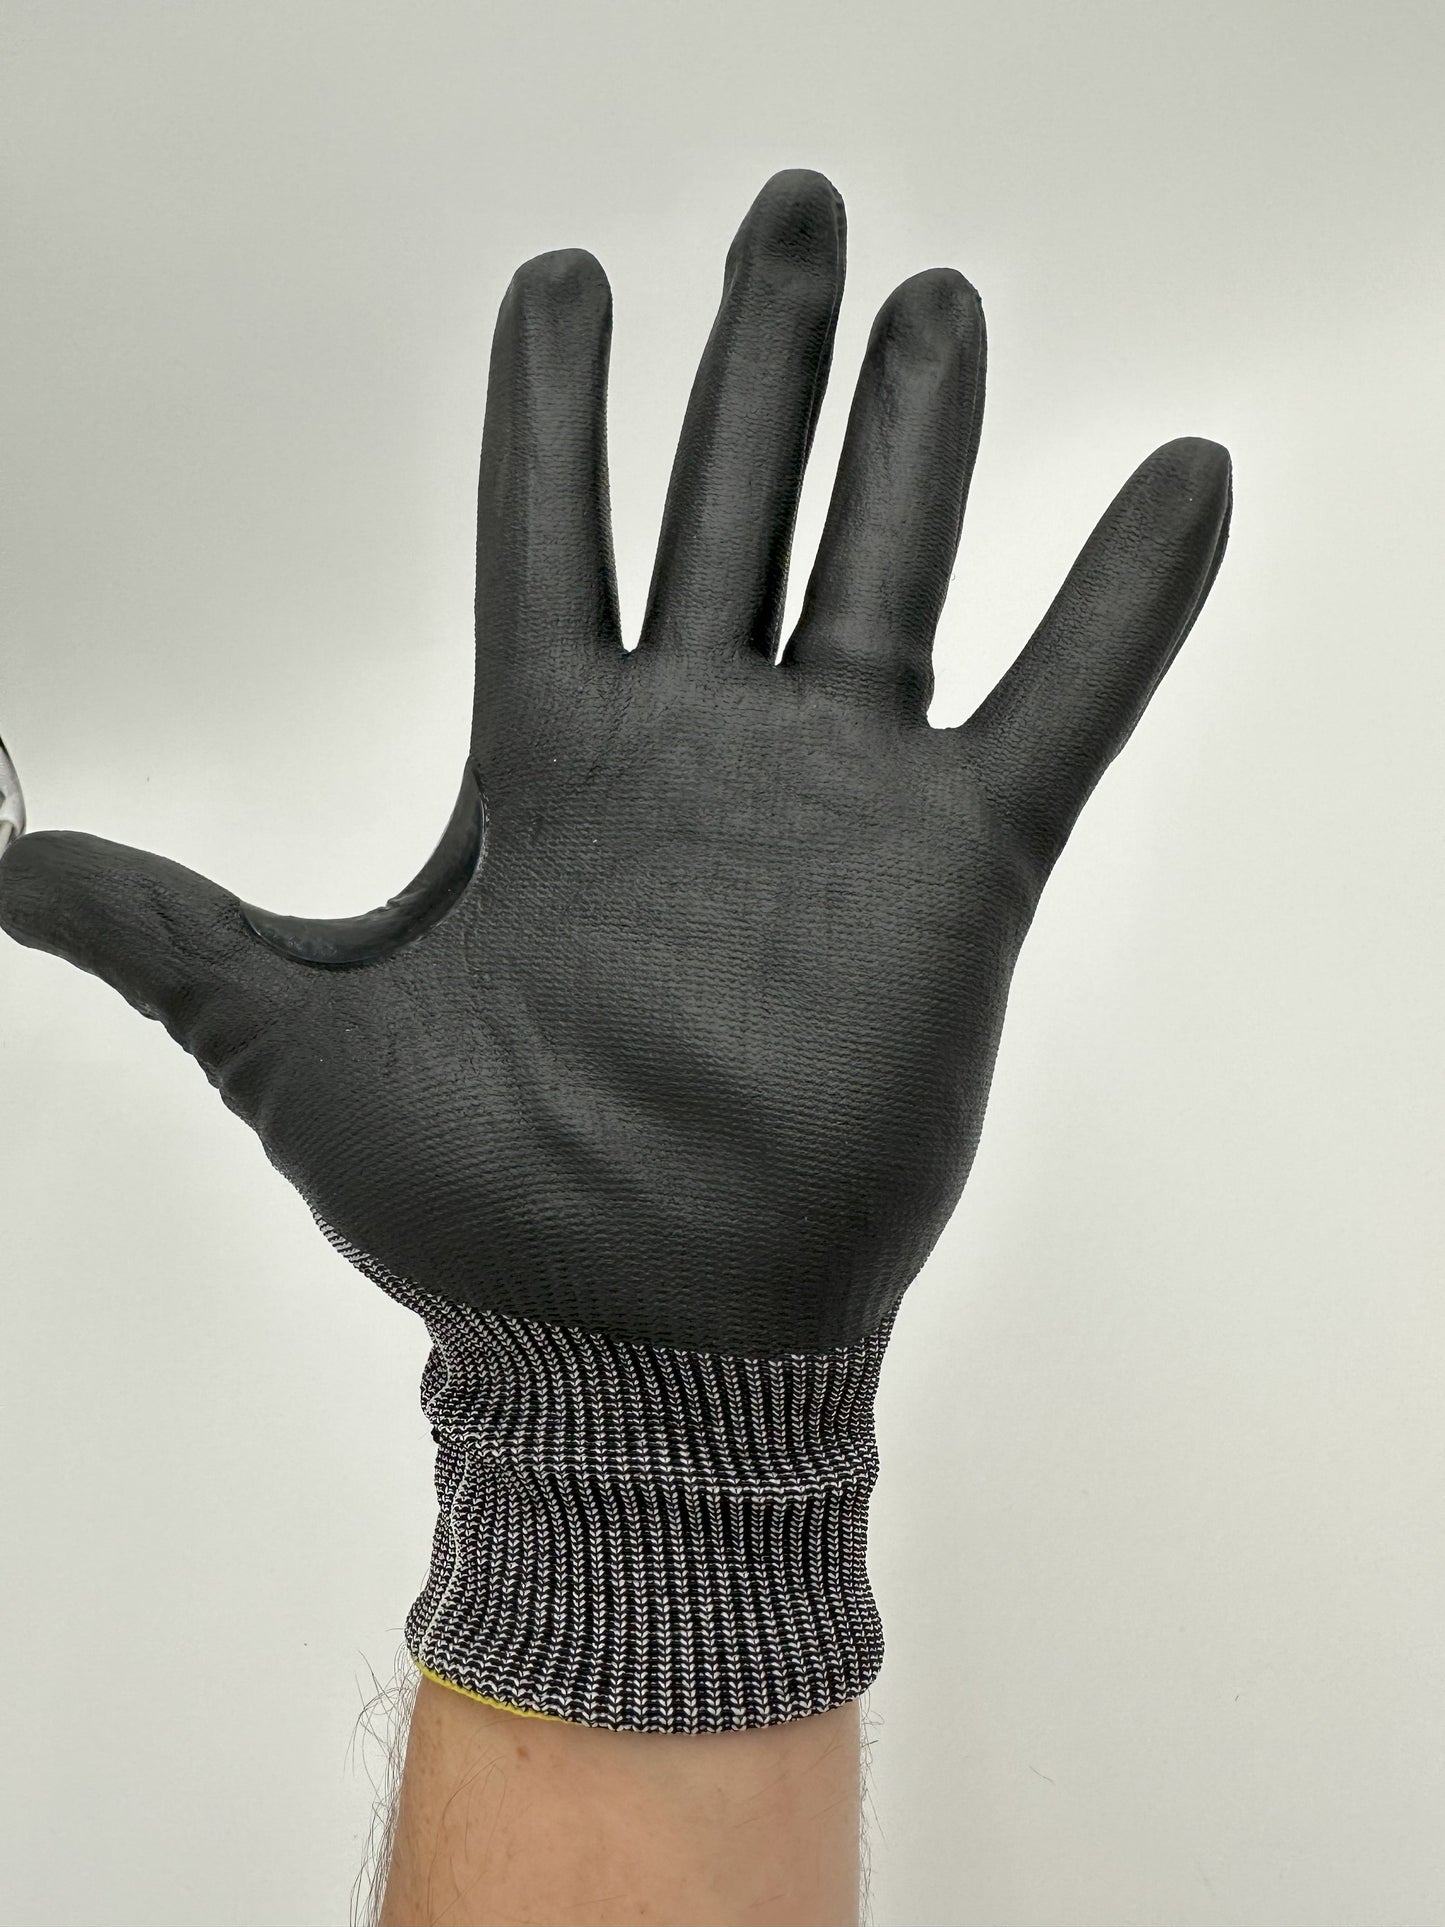 FME Gloves Large